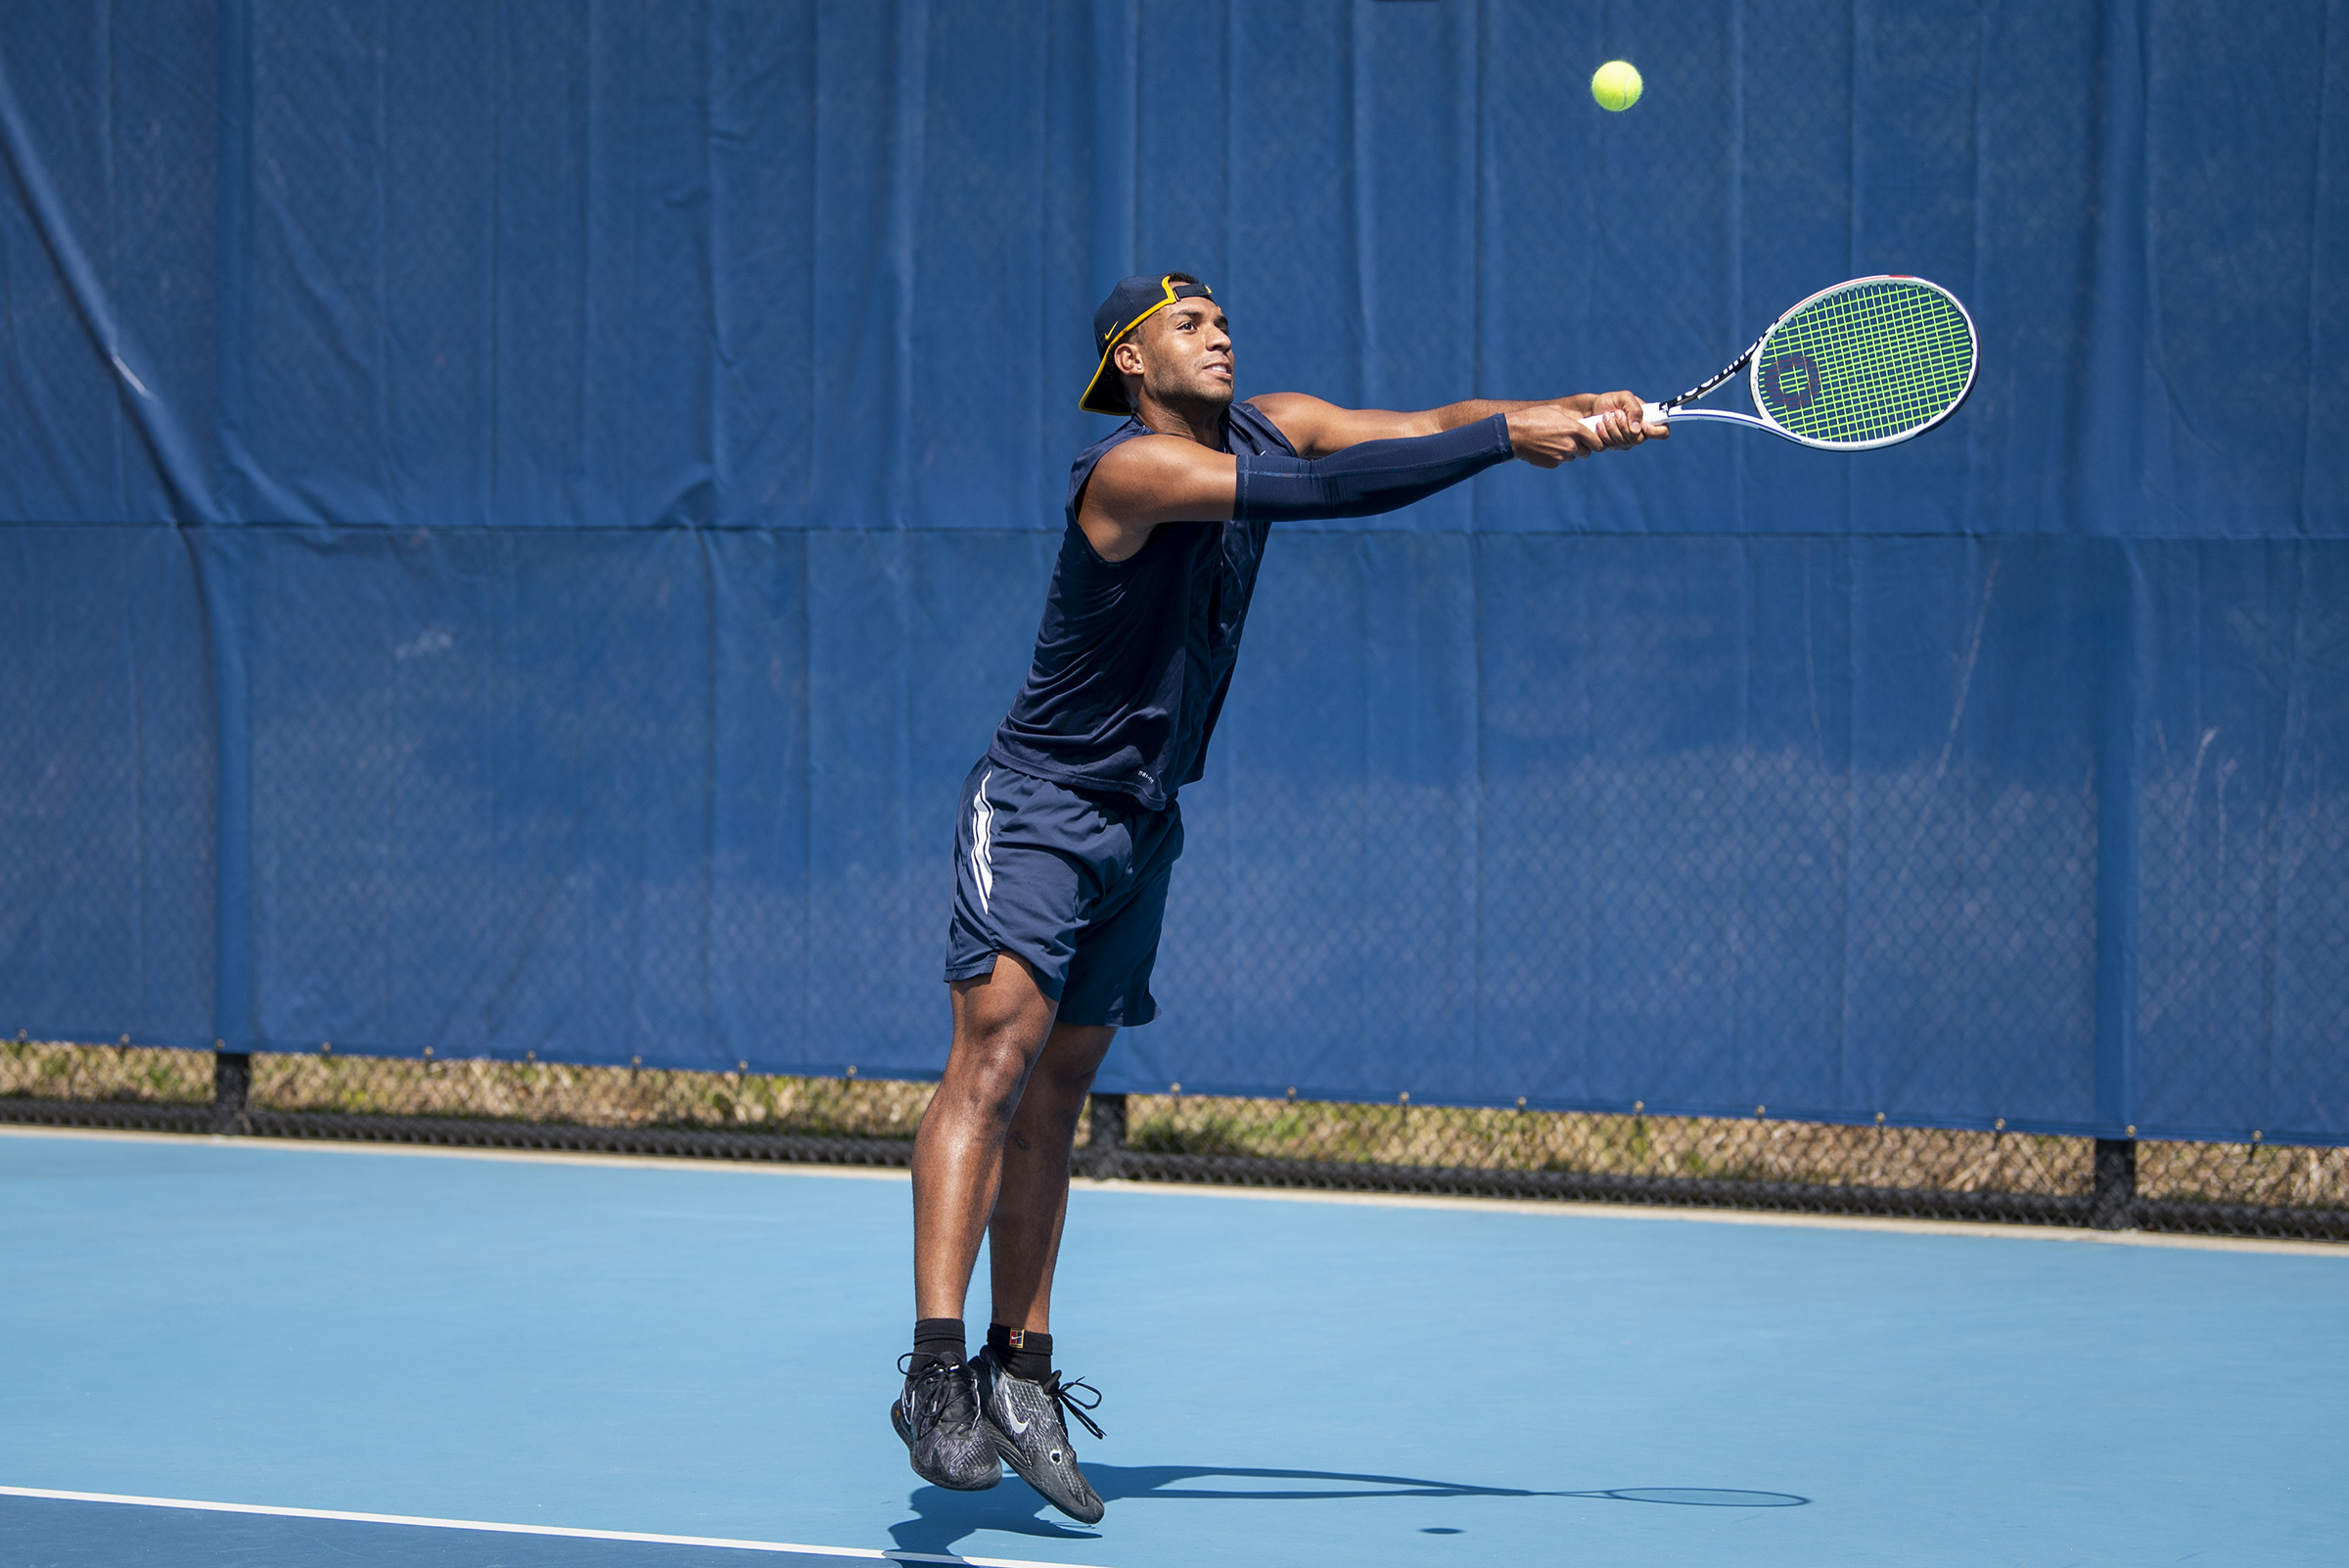 Michigan mens and womens tennis teams fall short at ITA